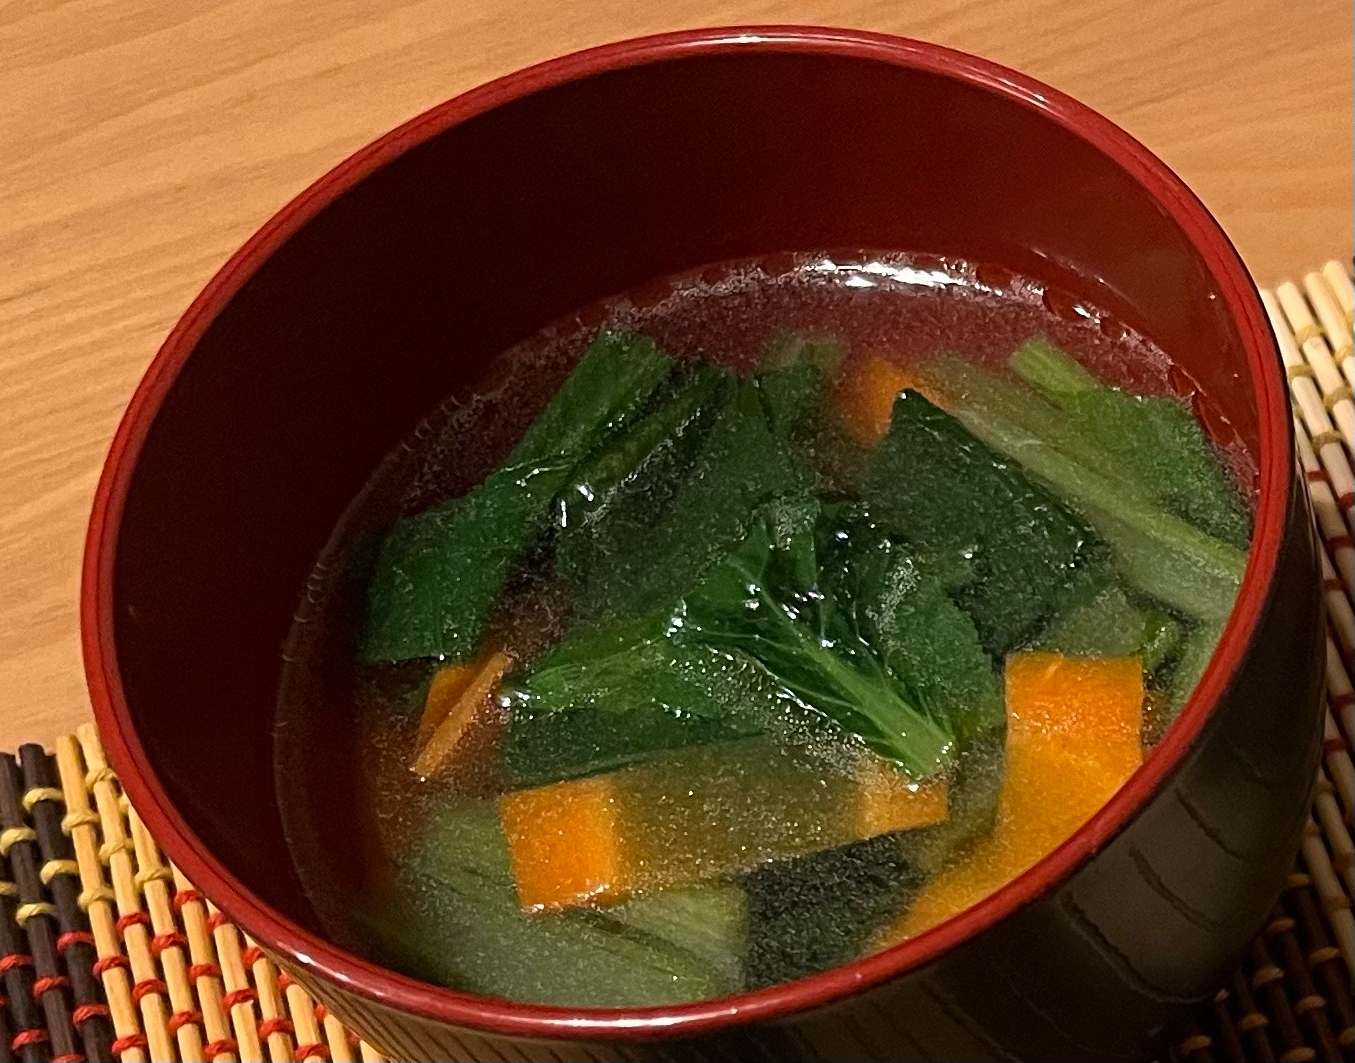 小松菜と人参の中華スープ